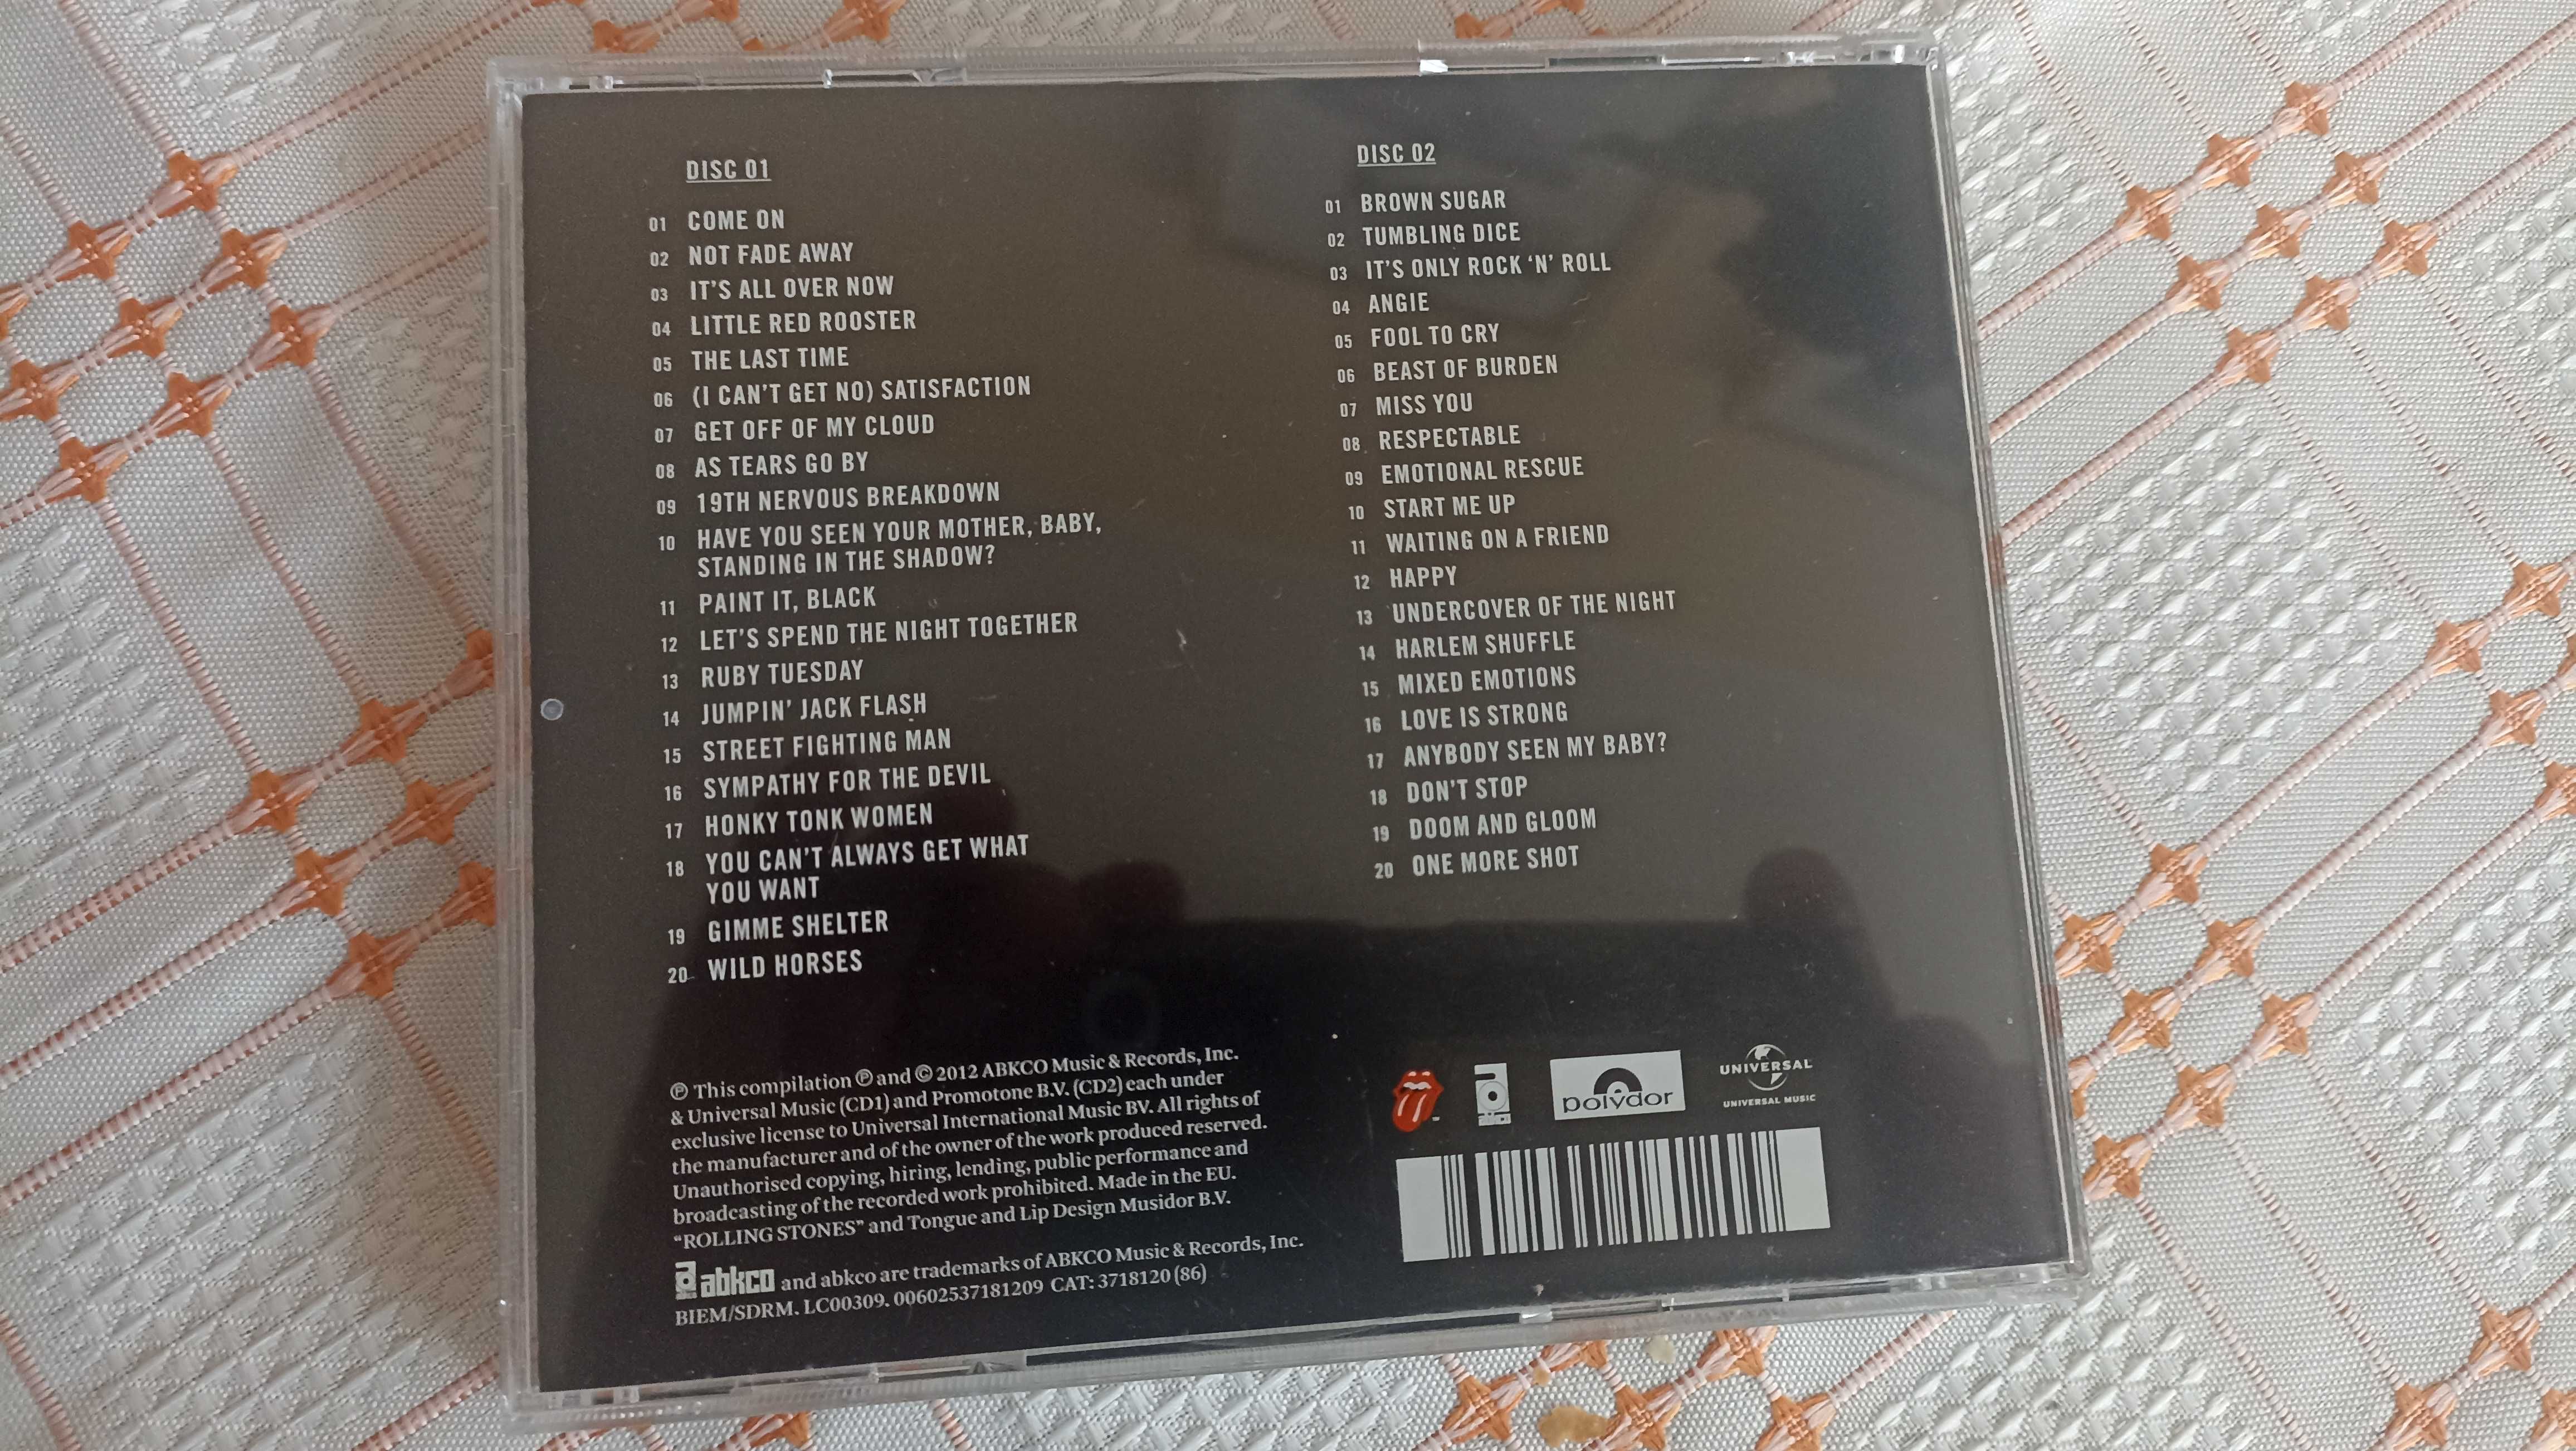 The Rolling stones Grrr cd 2